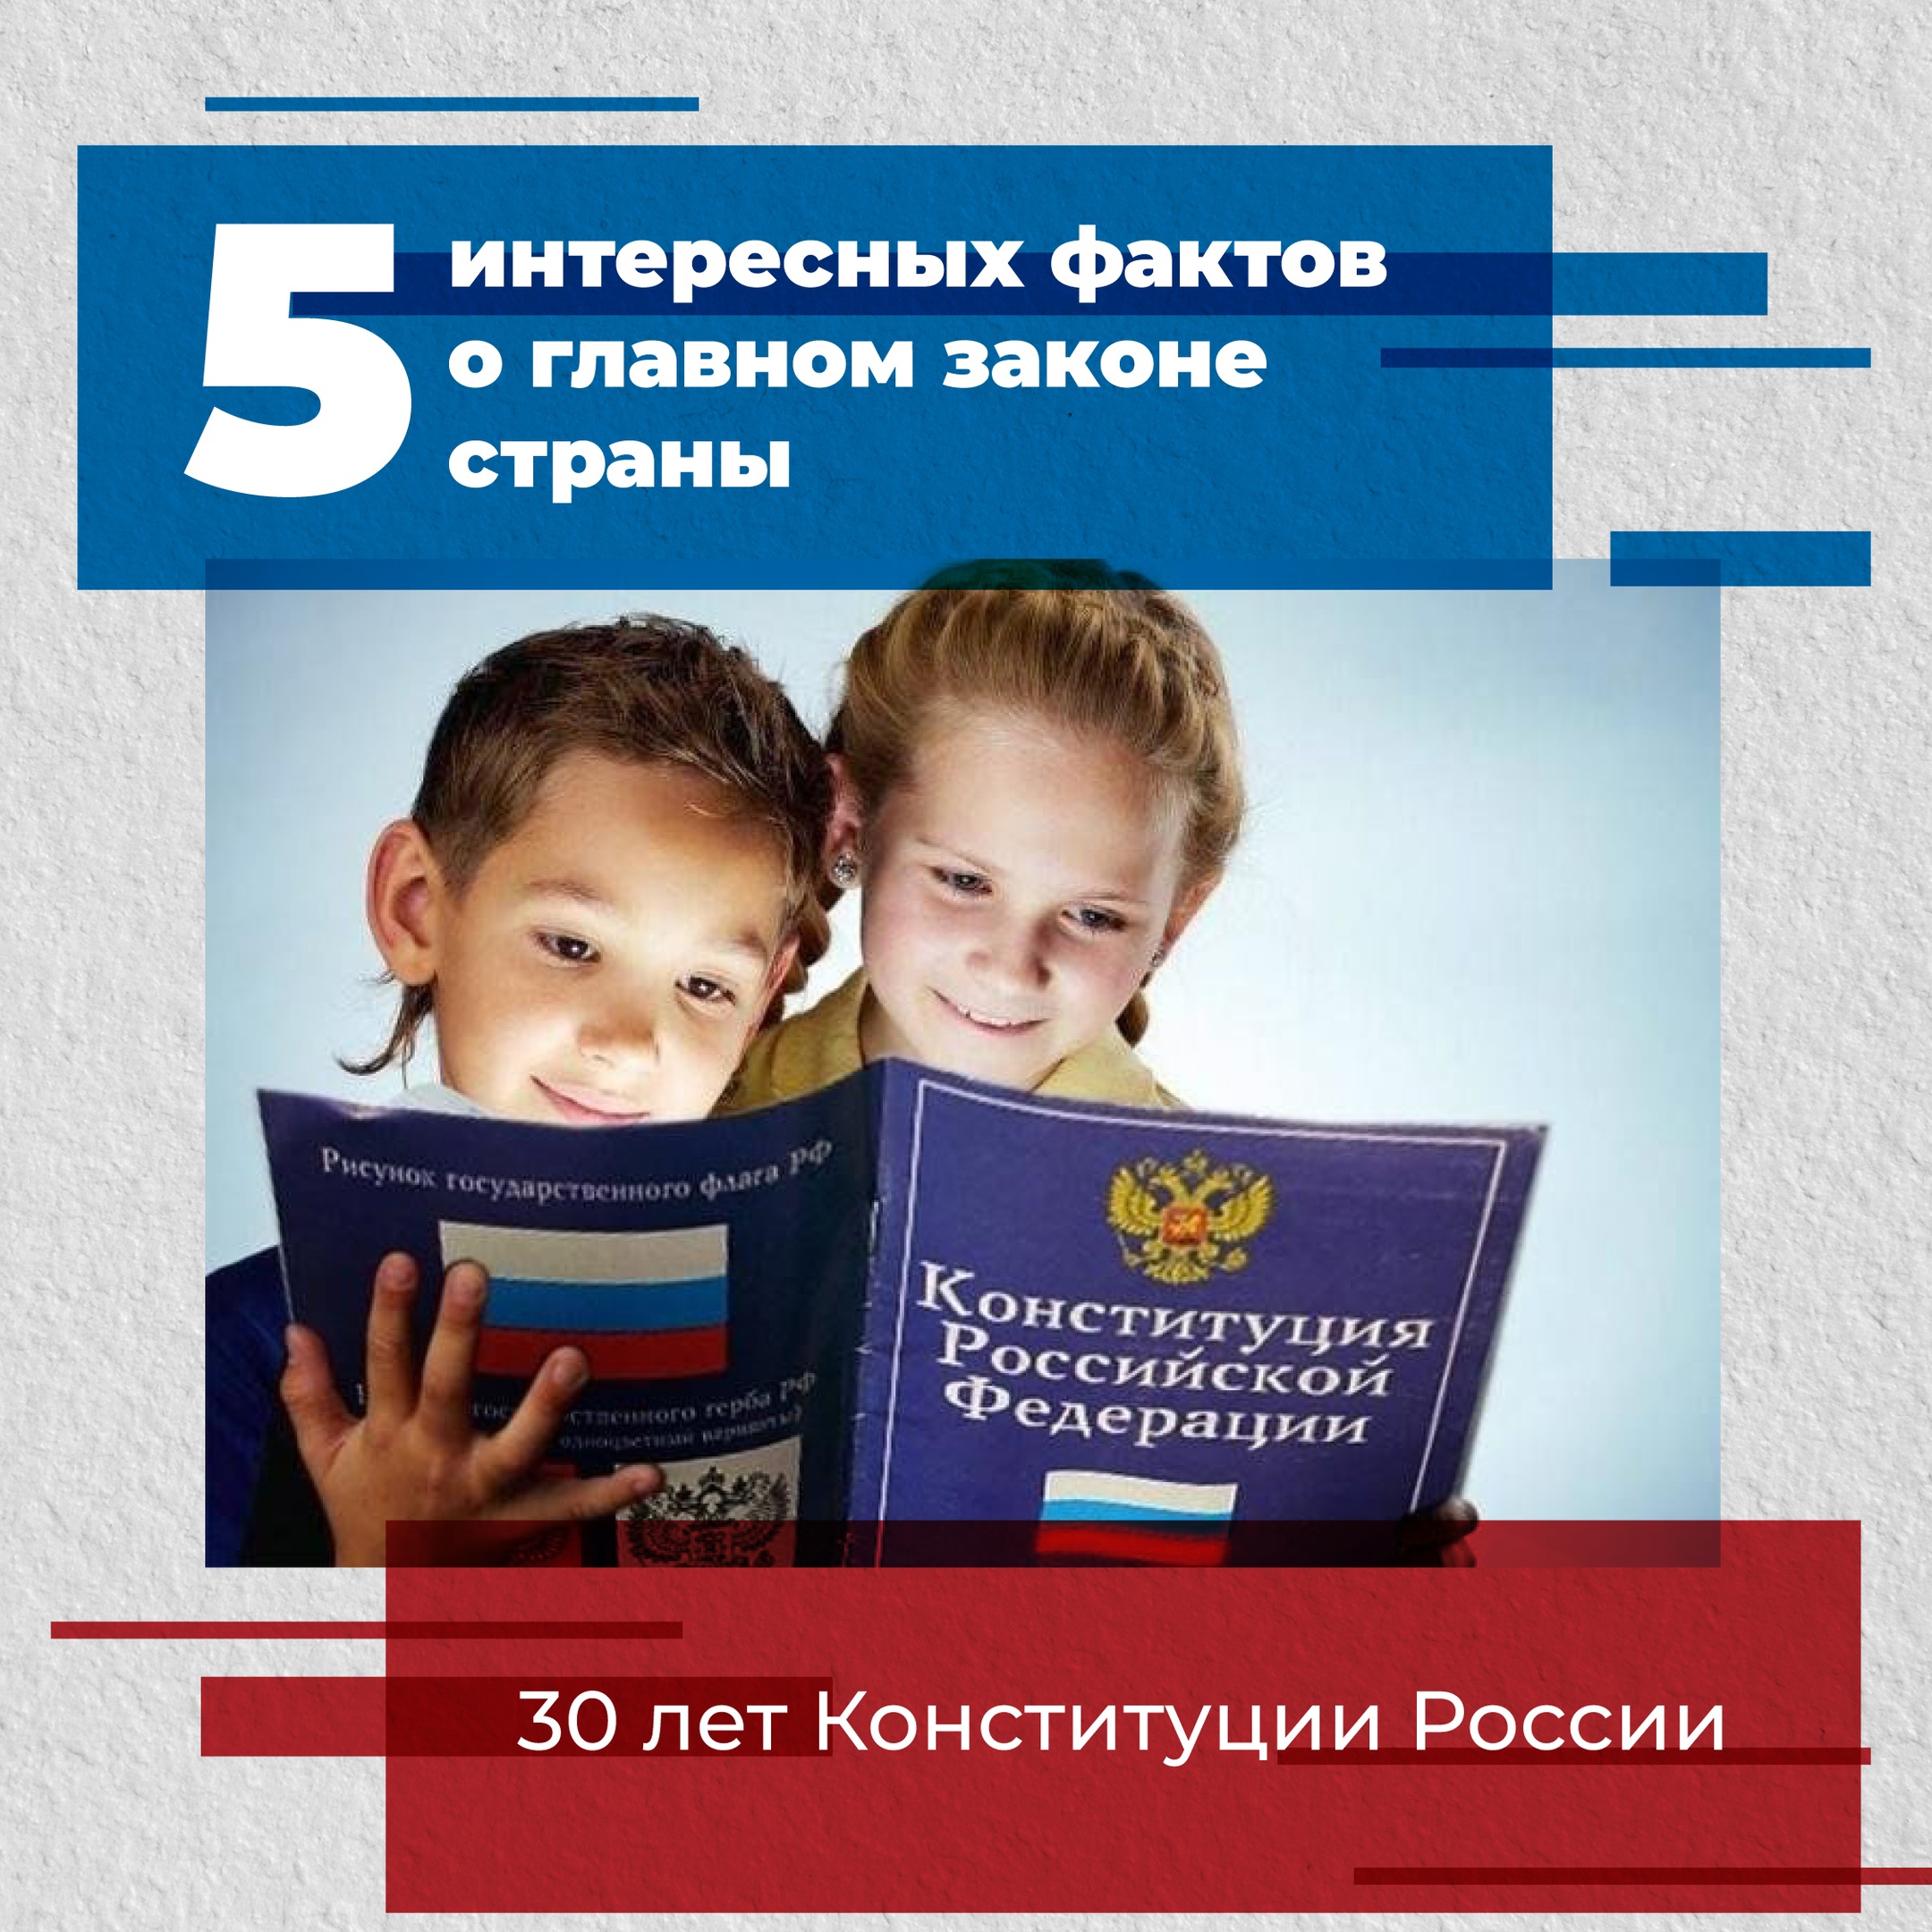 В этом году Конституции России исполняется 30 лет.